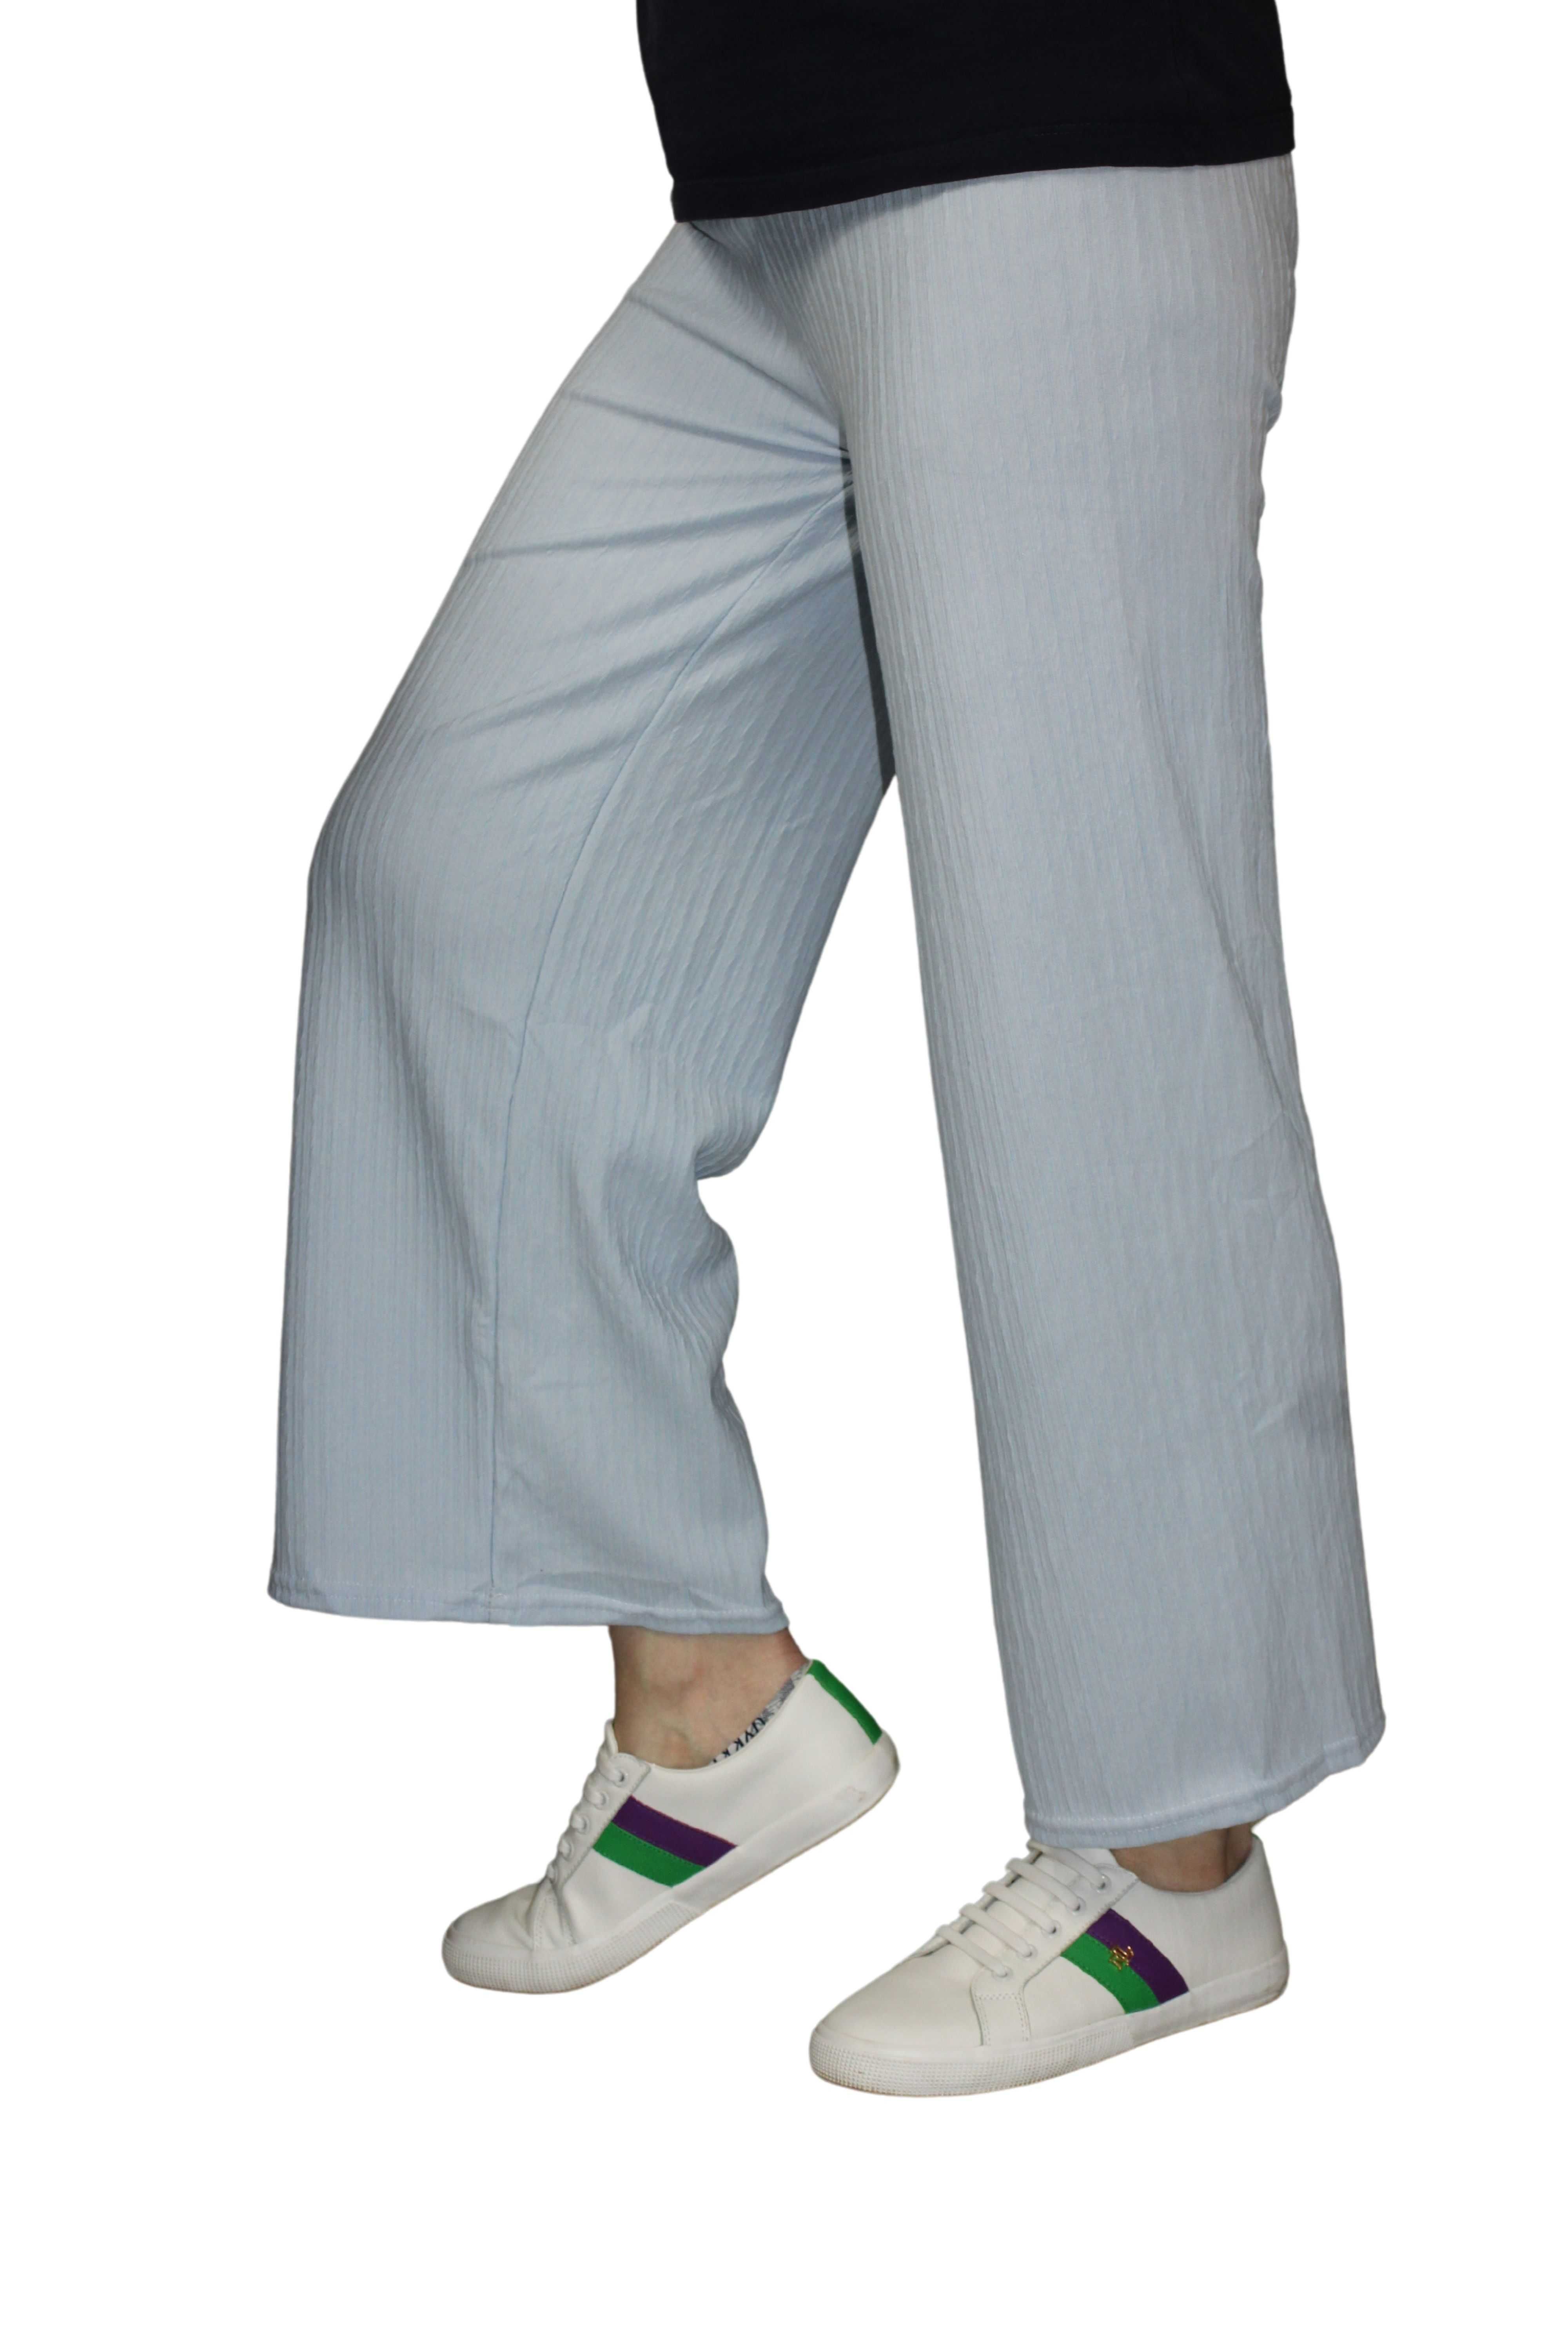 szerokie spodnie damskie cienkie szerokie przewiewne M/L lub XL/XXL